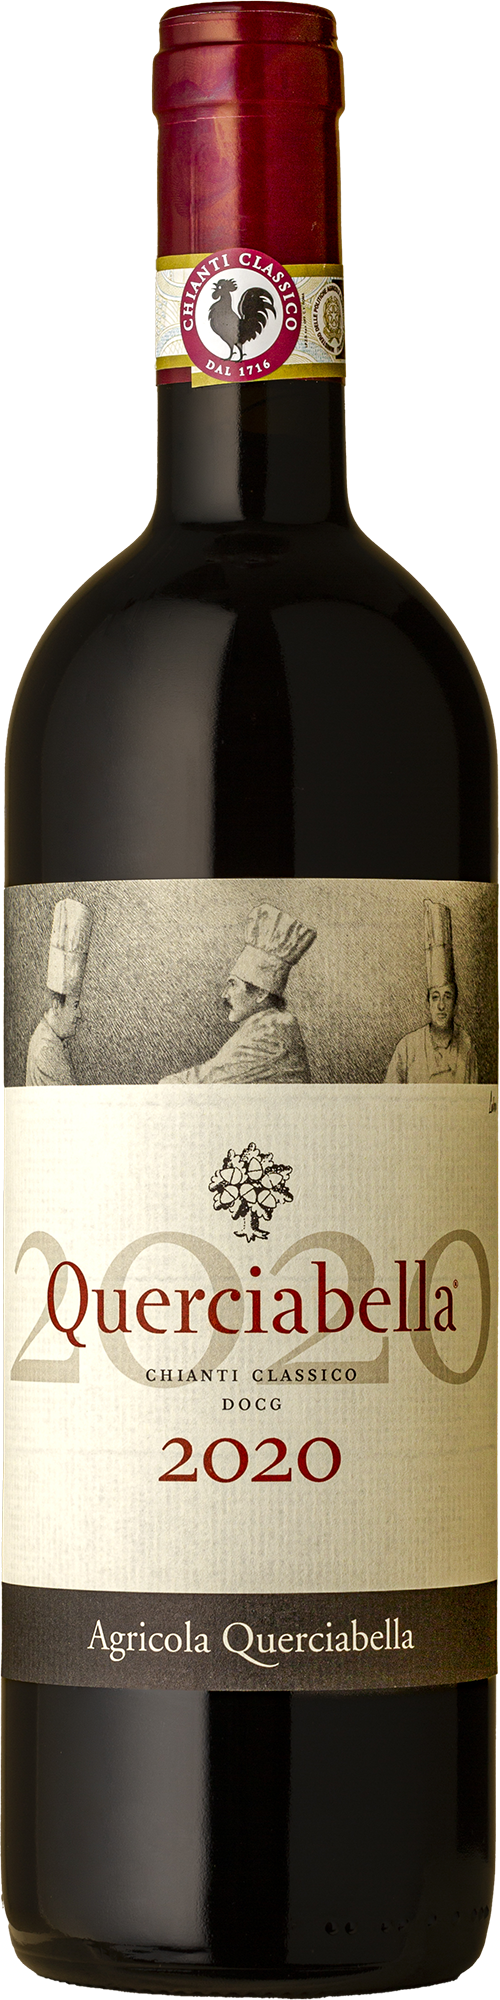 Querciabella - Chianti Classico Sangiovese 2020 Red Wine